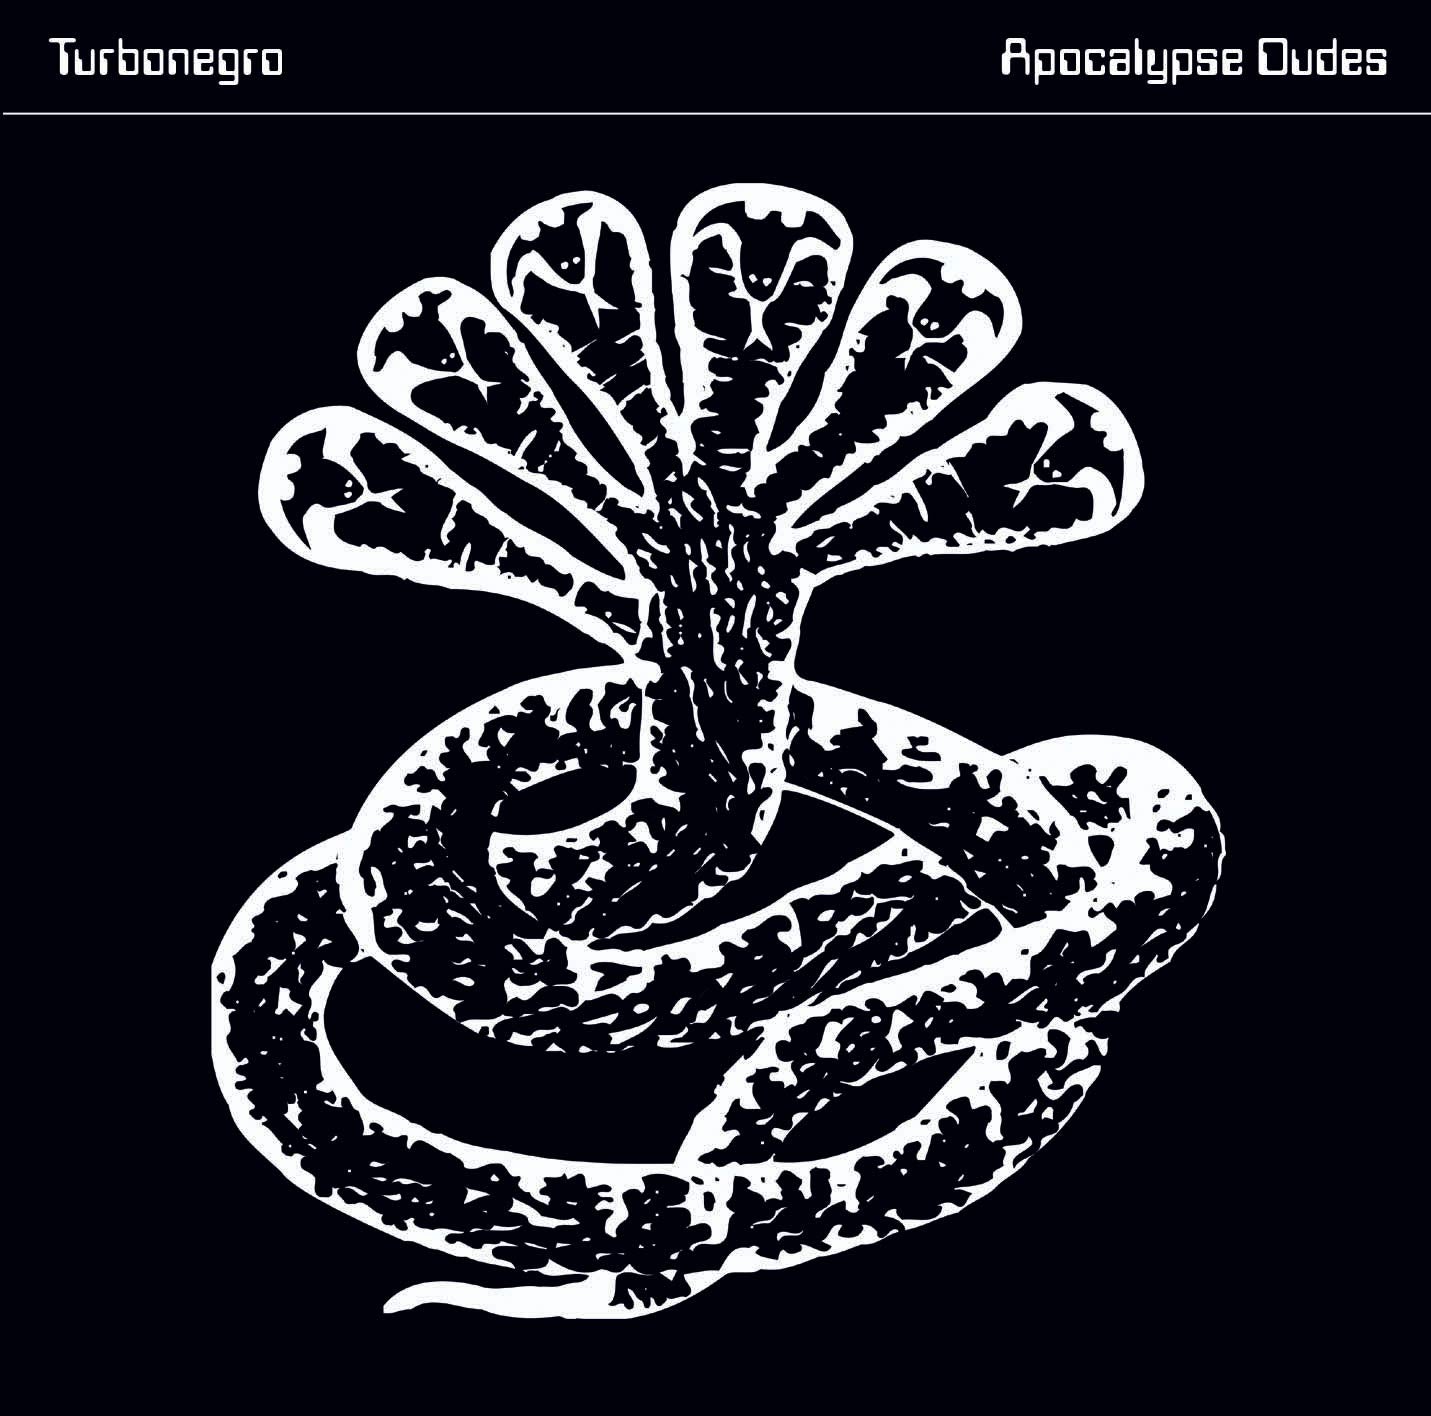 Turbonegro - Apocalypse Dudes CD